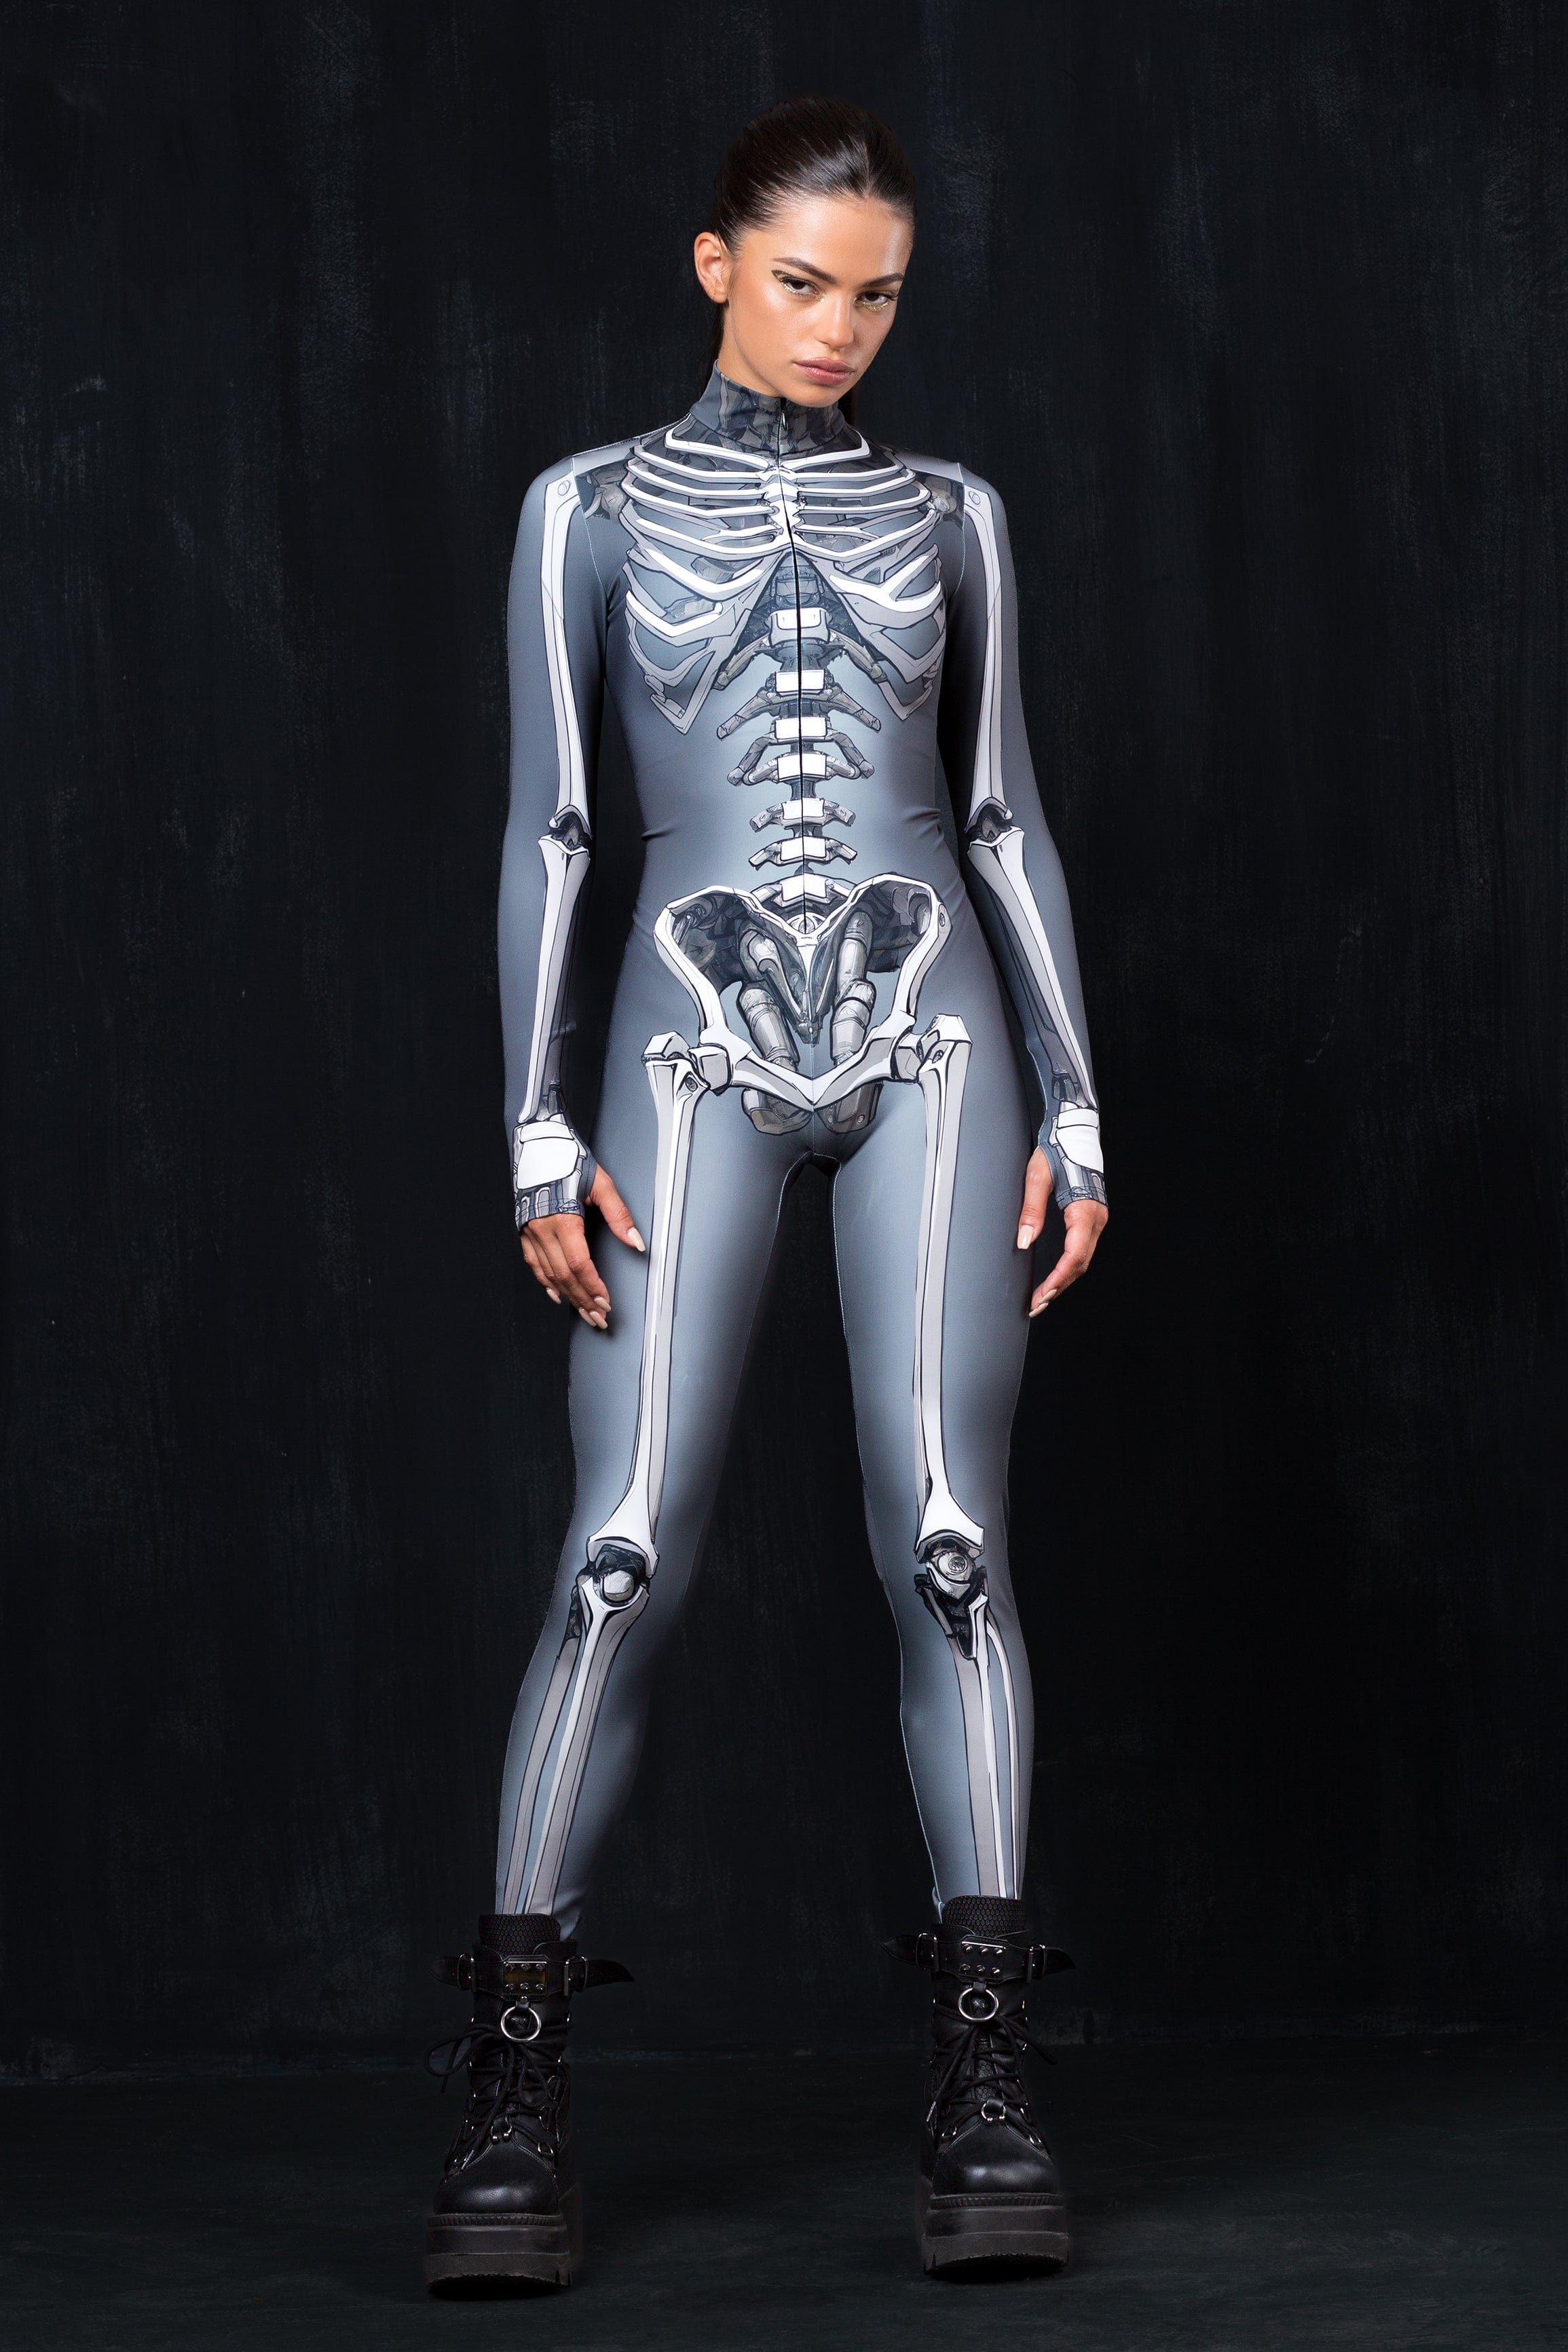 Ms. Bones Costume